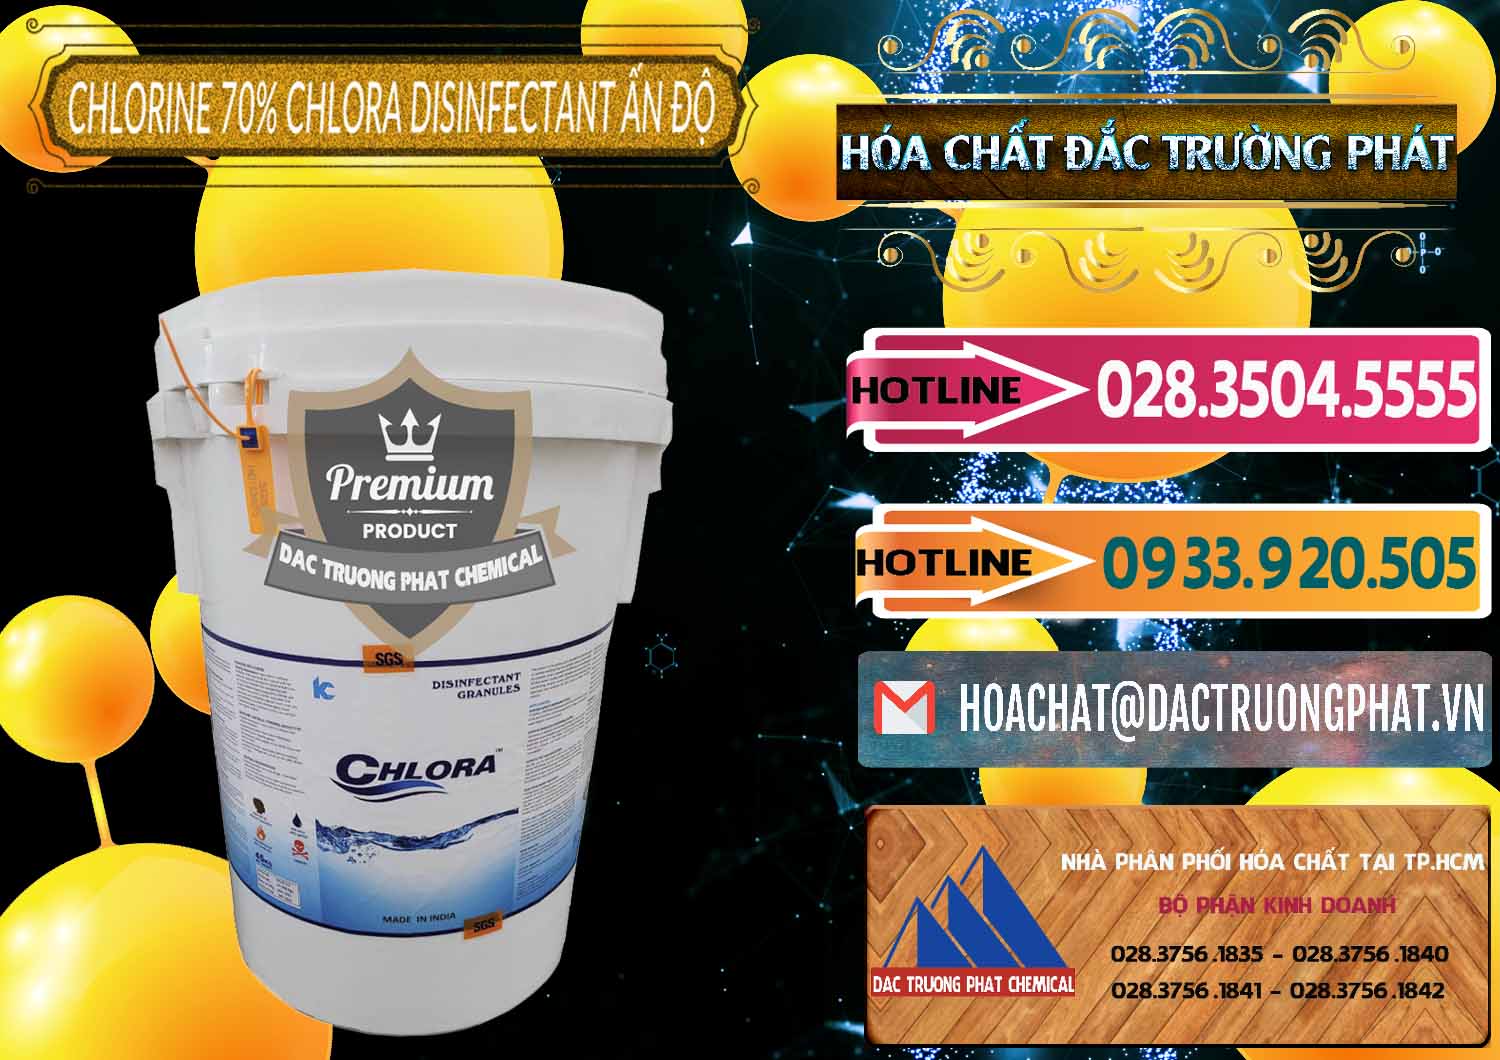 Đơn vị bán & cung ứng Chlorine – Clorin 70% Chlora Disinfectant Ấn Độ India - 0213 - Cty cung ứng và phân phối hóa chất tại TP.HCM - dactruongphat.vn